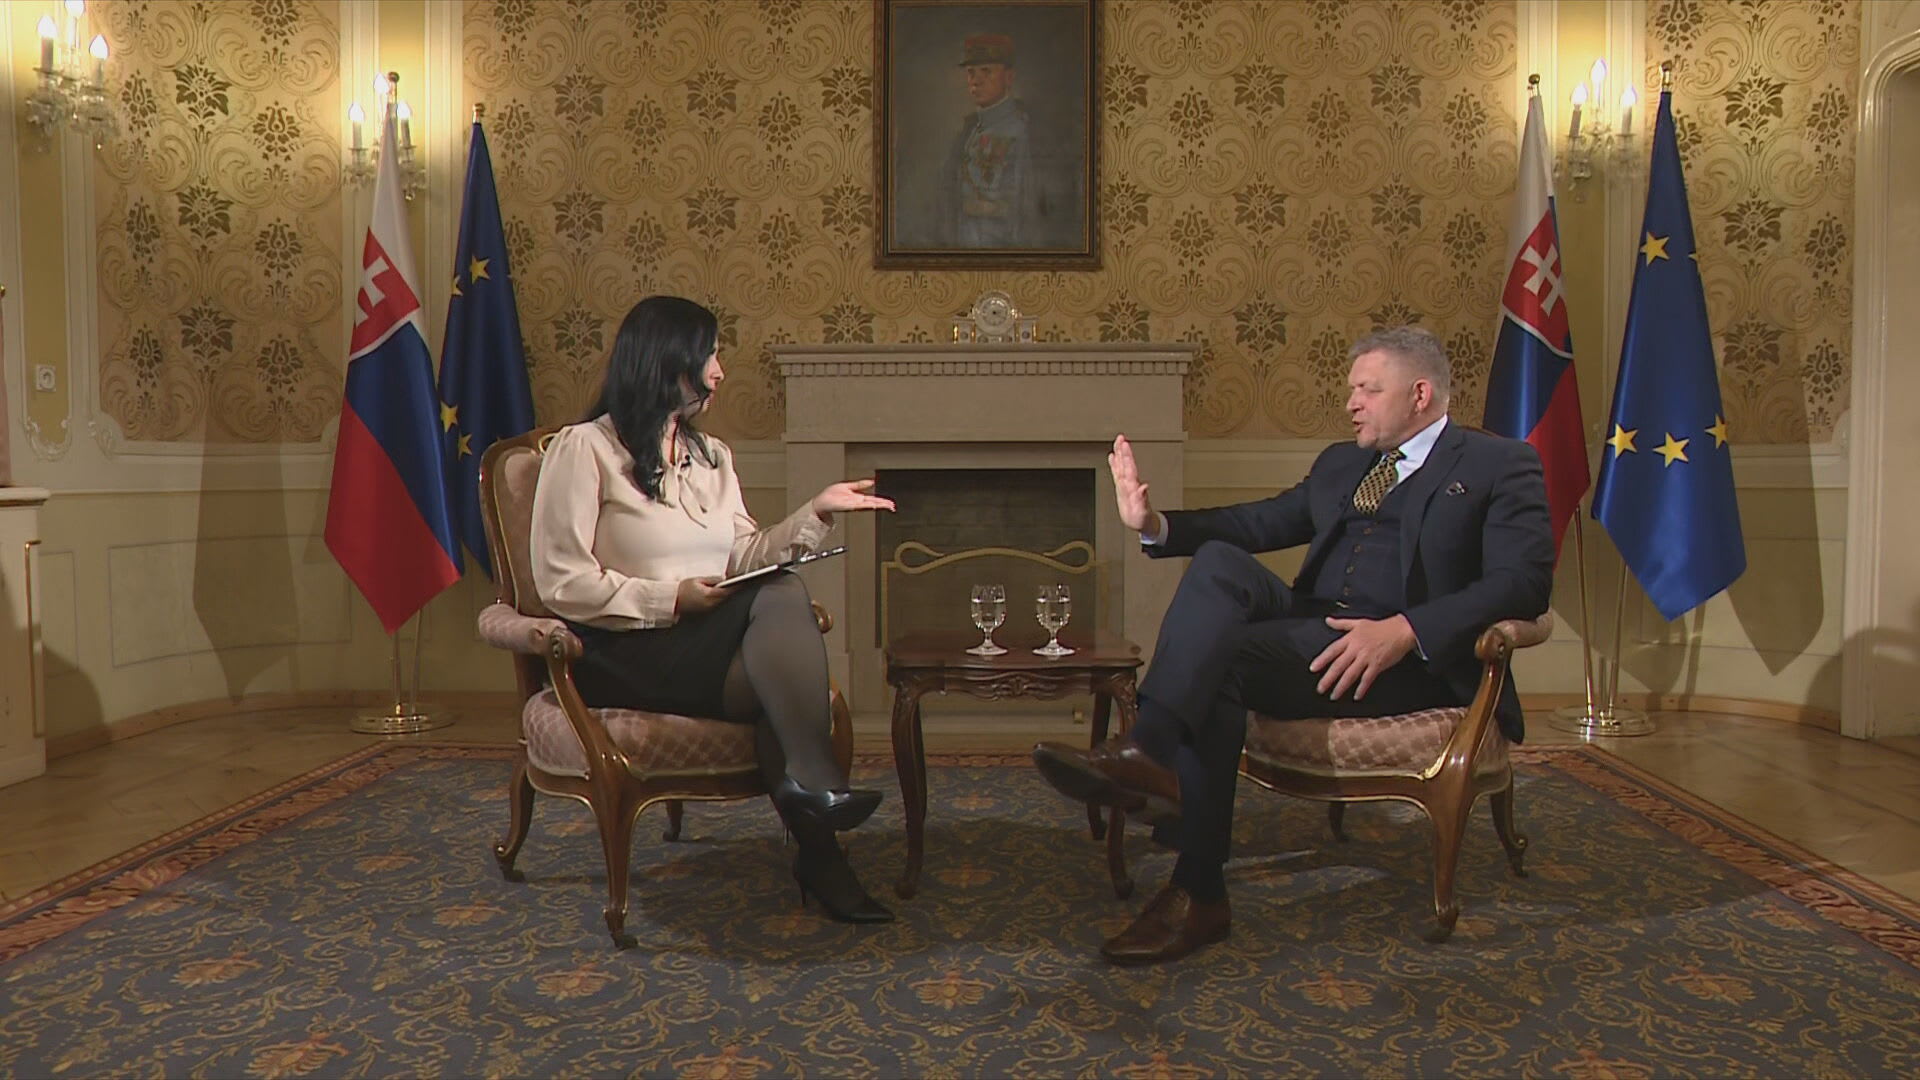 Slovenský premiér Robert Fico v rozhovoru pro televizi JOJ